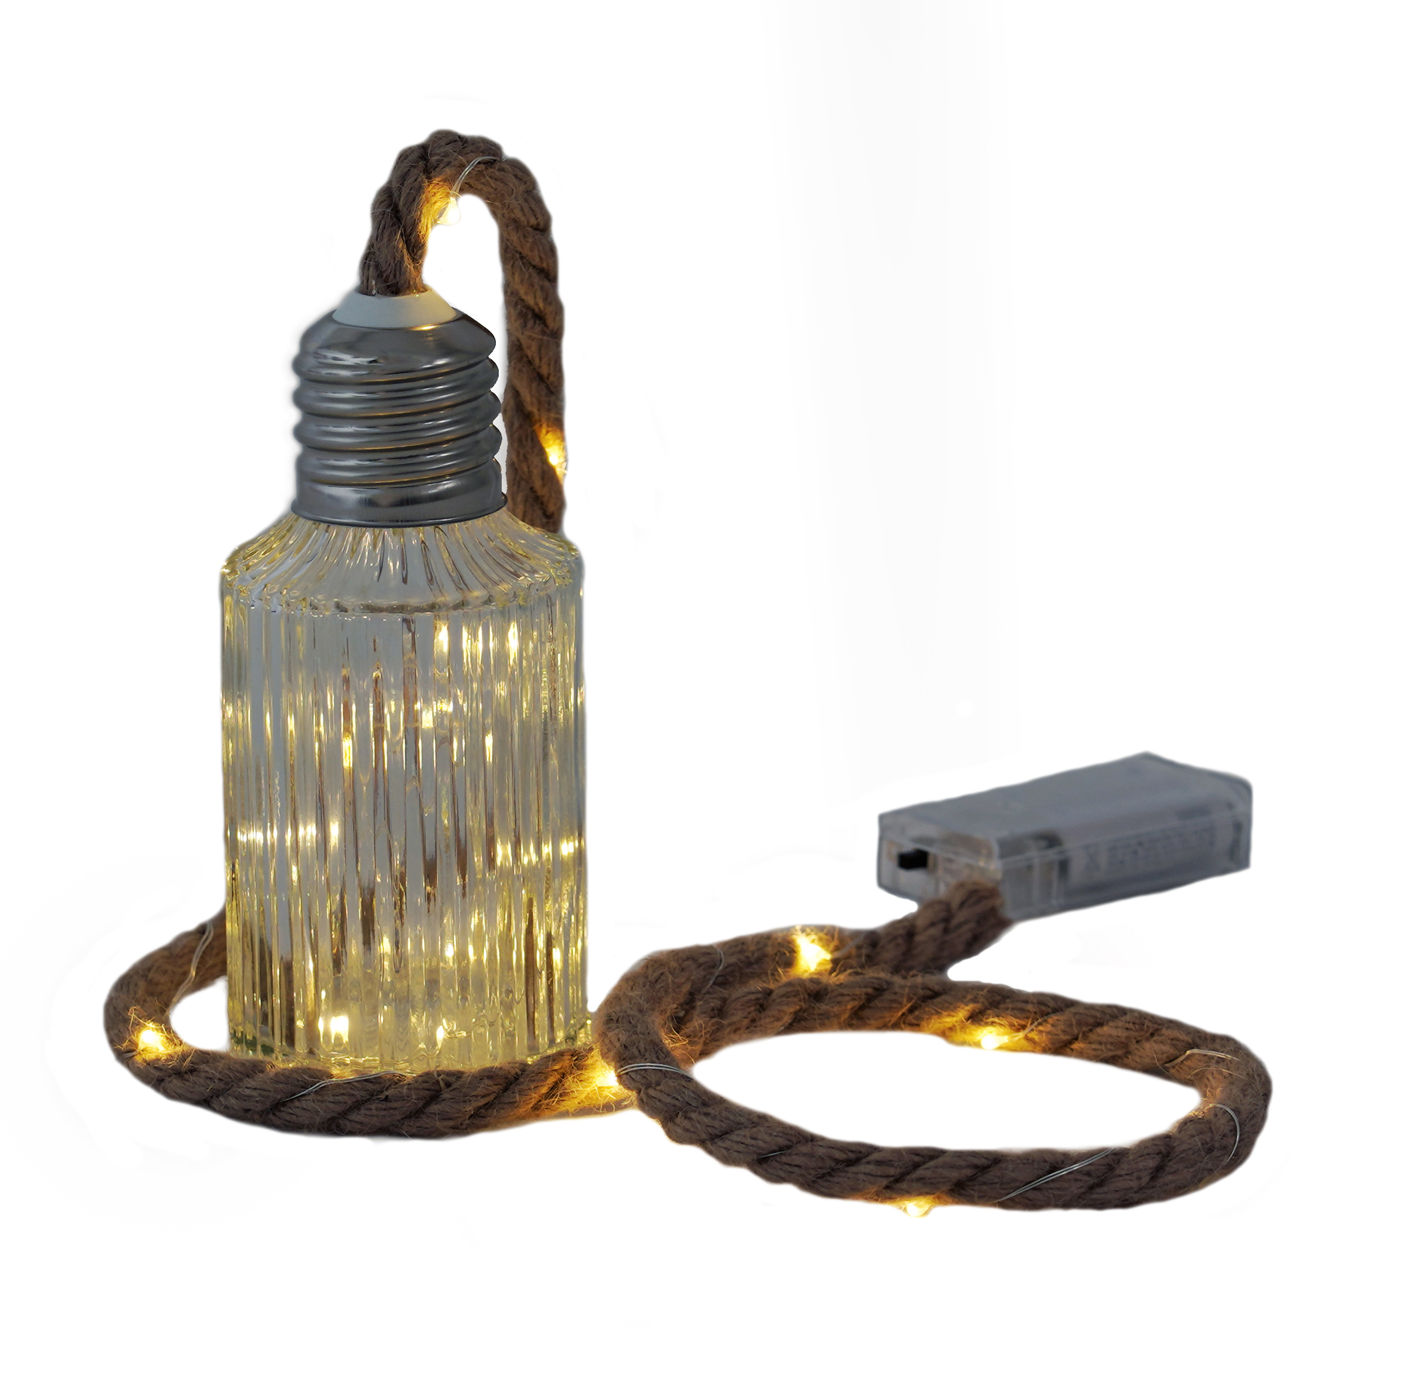 LED Deko Glas Flasche mit Seil 15 cm - 20 LED - Tischlampe warmweiß beleuchtet 